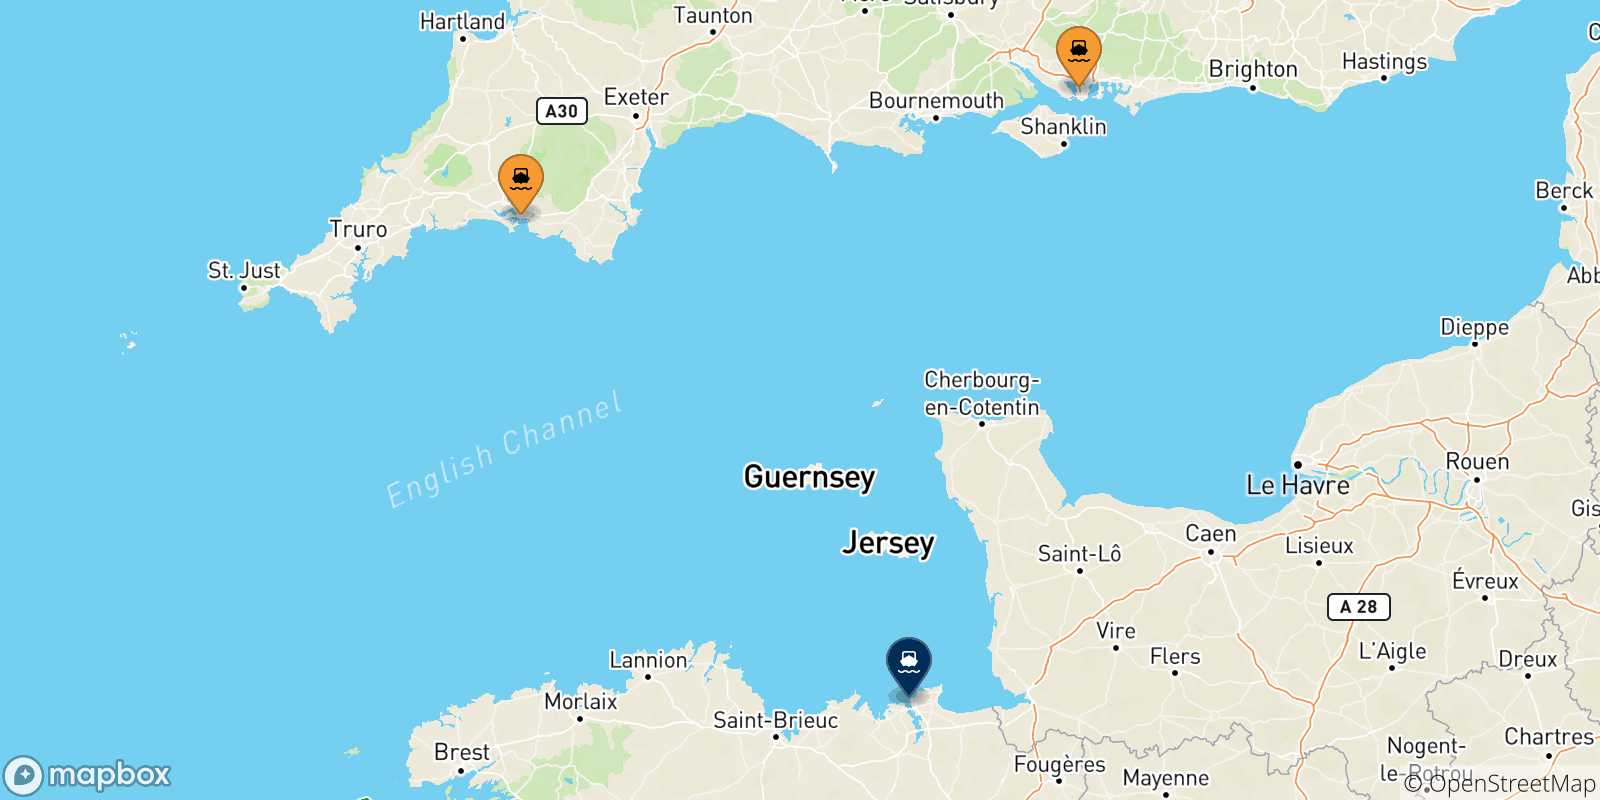 Mappa delle possibili rotte tra il Regno Unito e St Malo